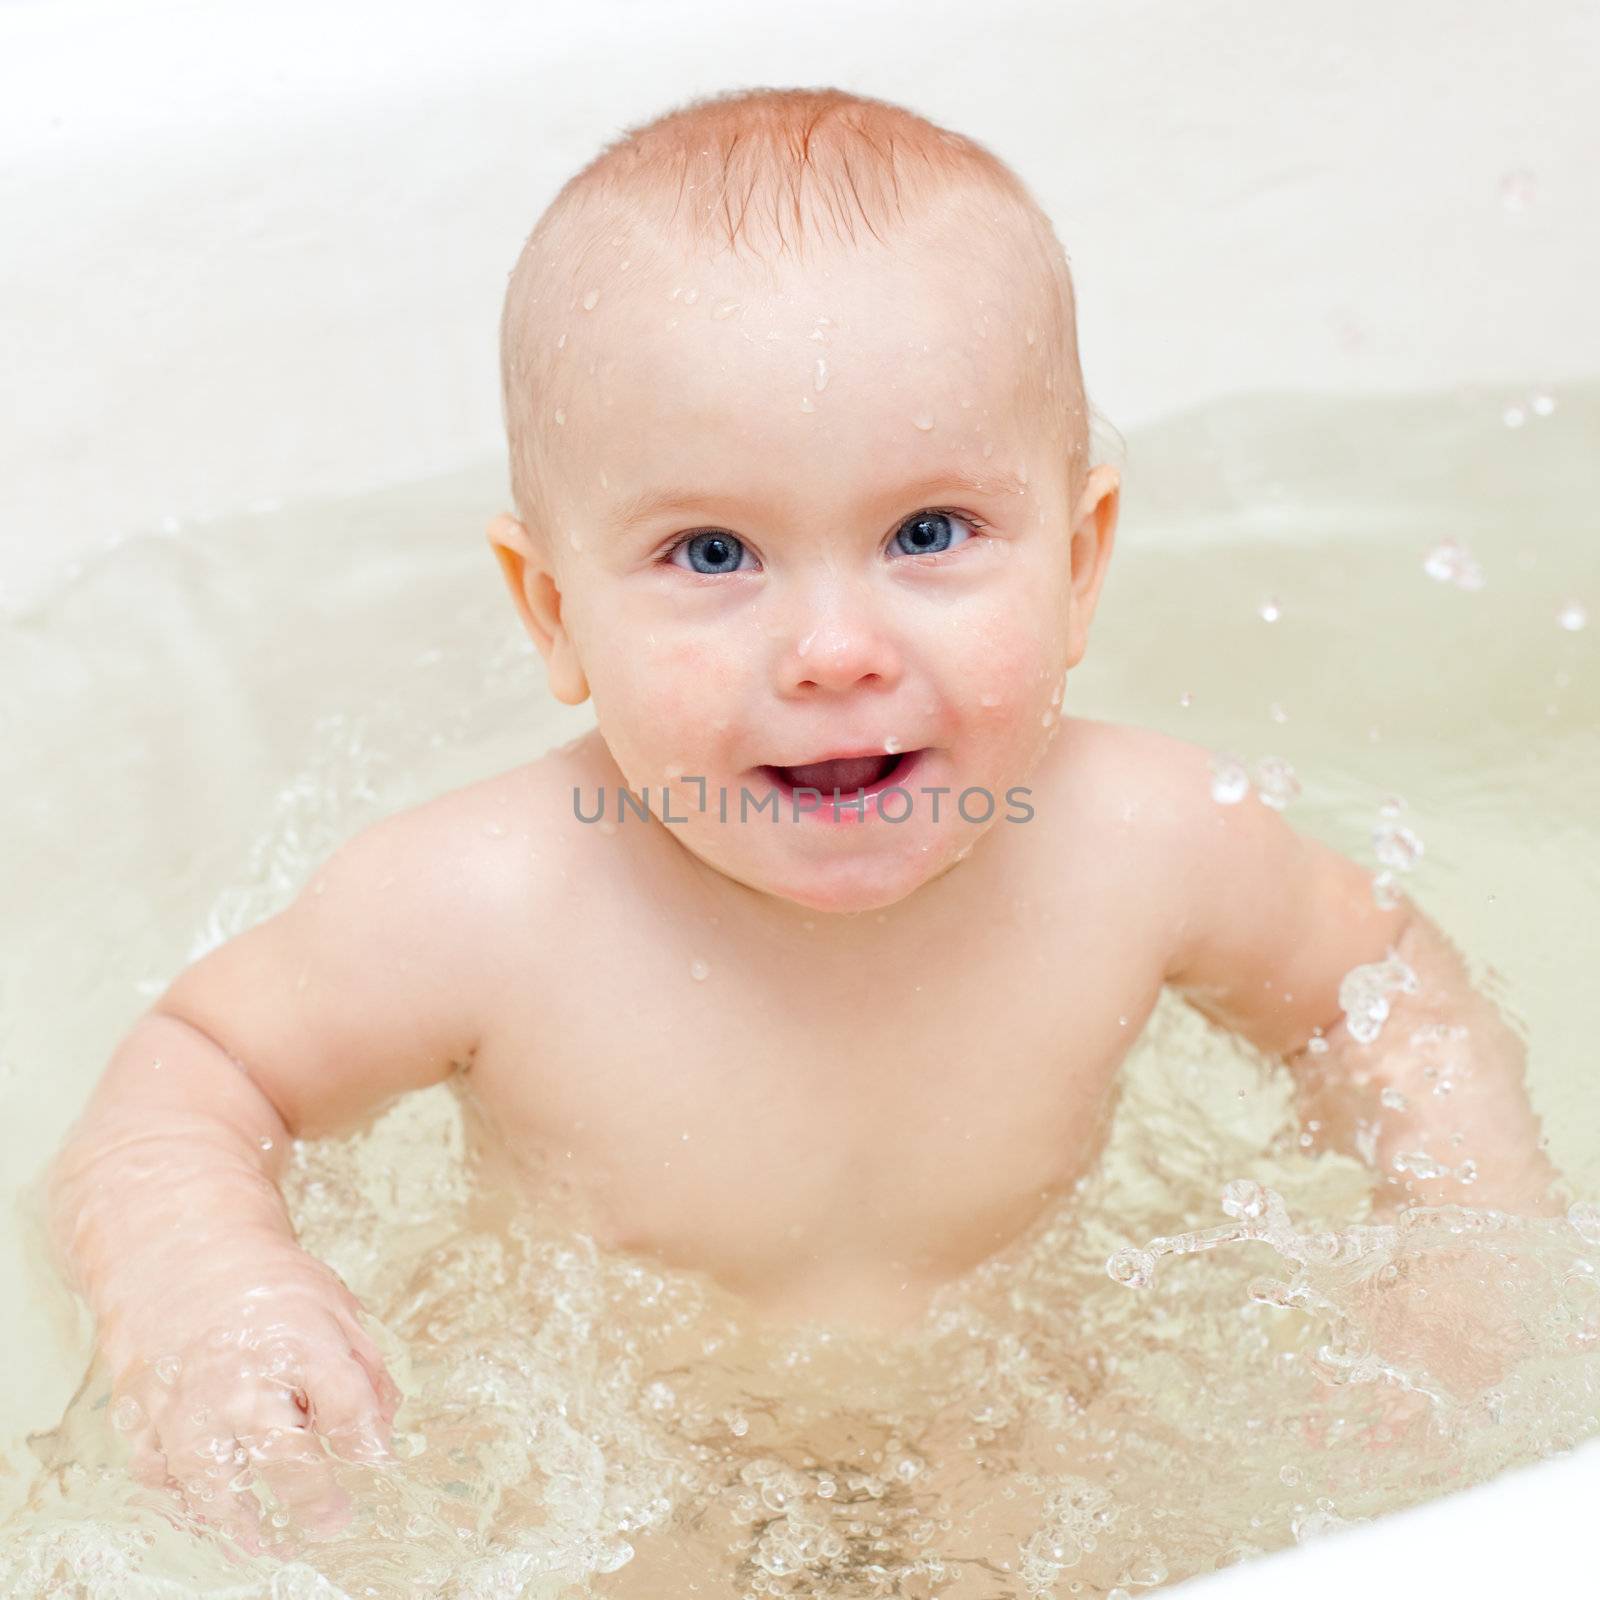 Cute little baby girl bathing